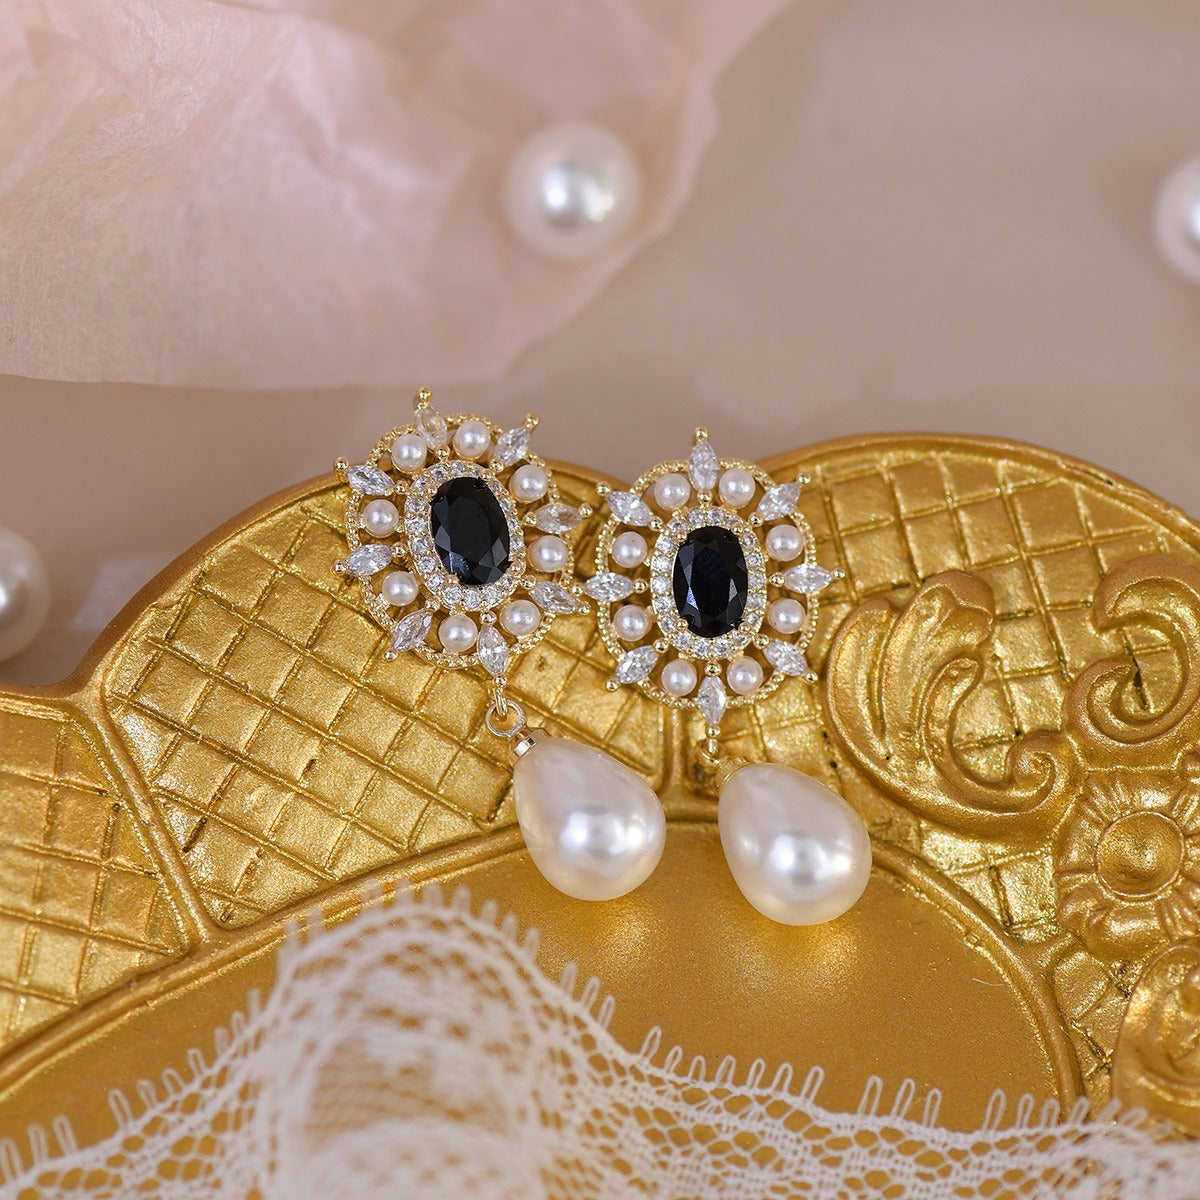 Cercei aurii, cu perle, pietre din zirconiu, suflati cu aur 14k, Moa C4